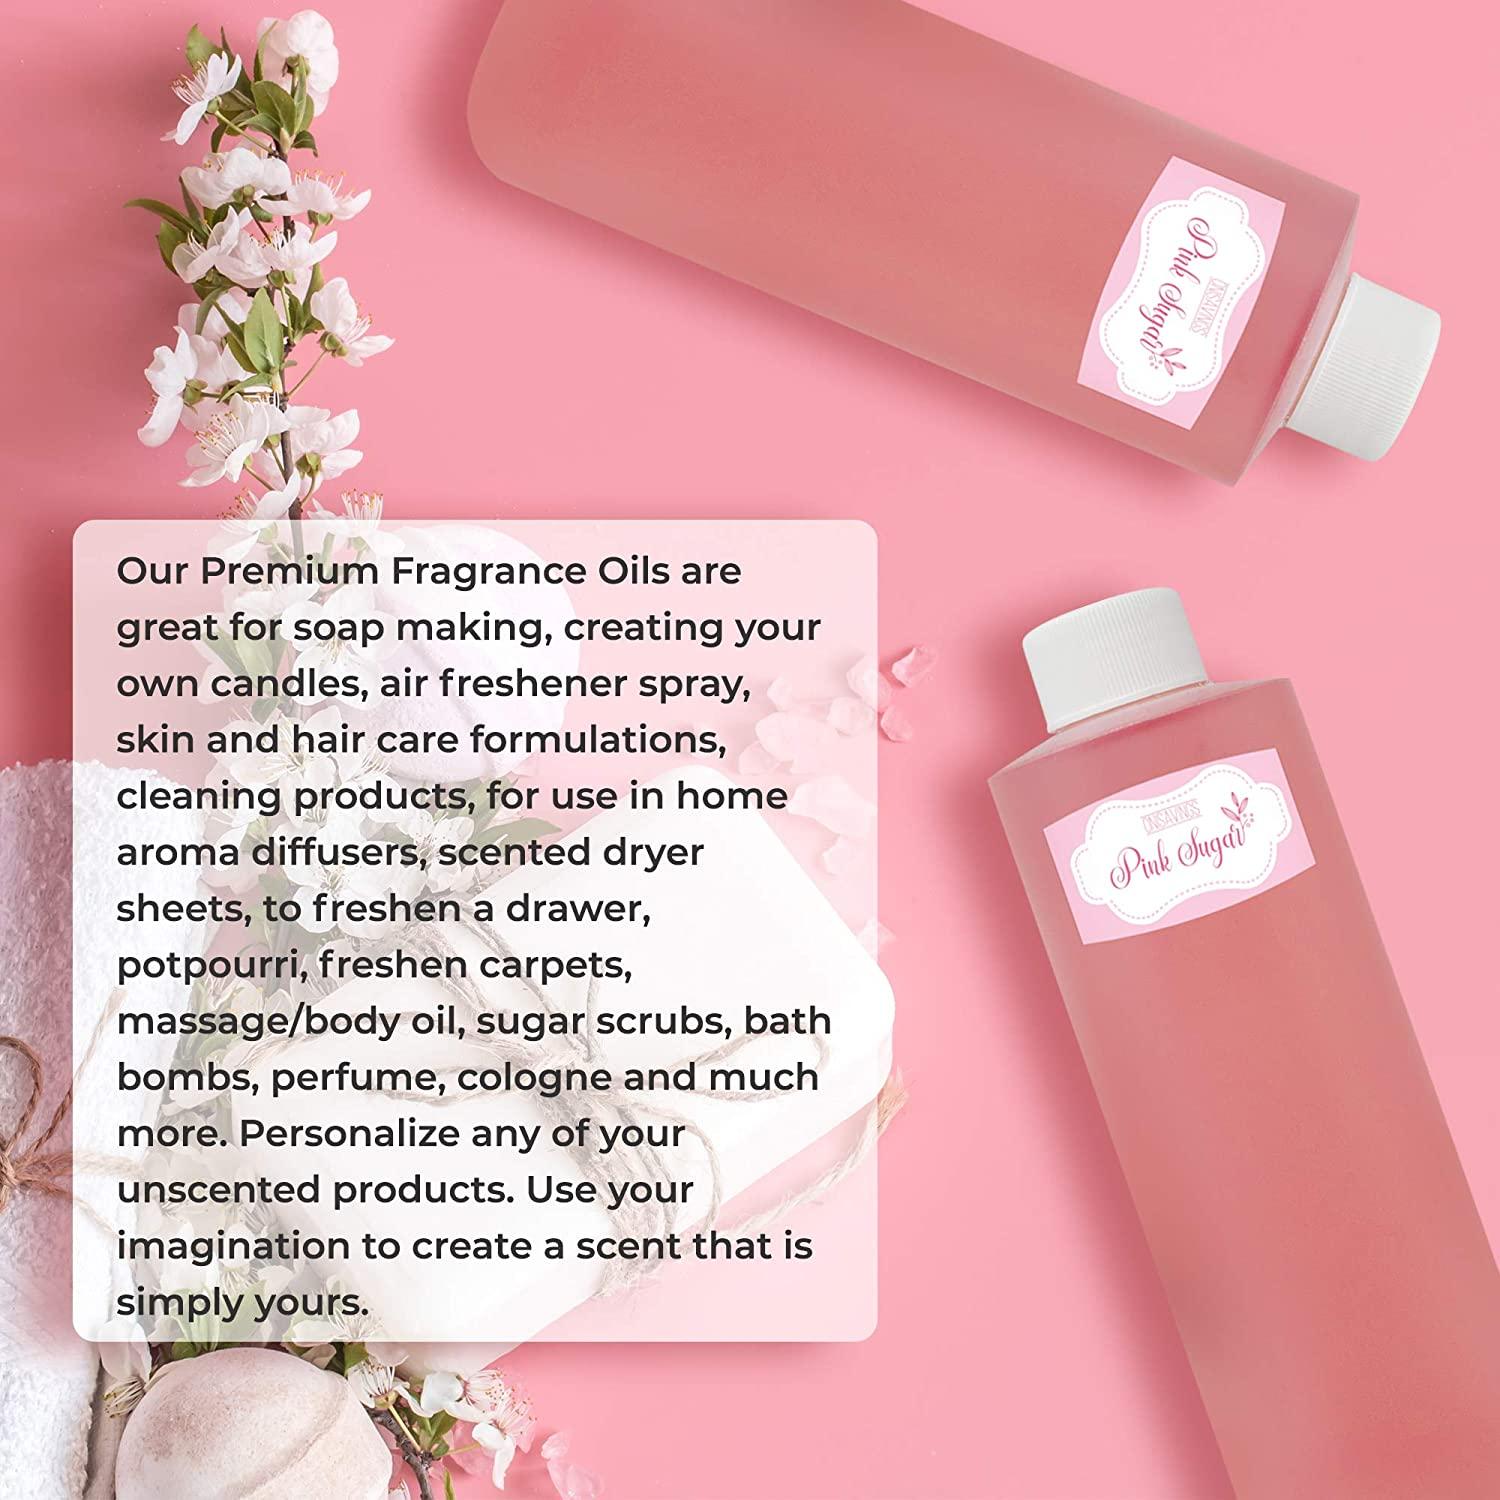 Pink Sugar Type Body Oil Zelda's Perfume Oil Wholesale 2oz 4oz 8oz  16oz (4 sizes